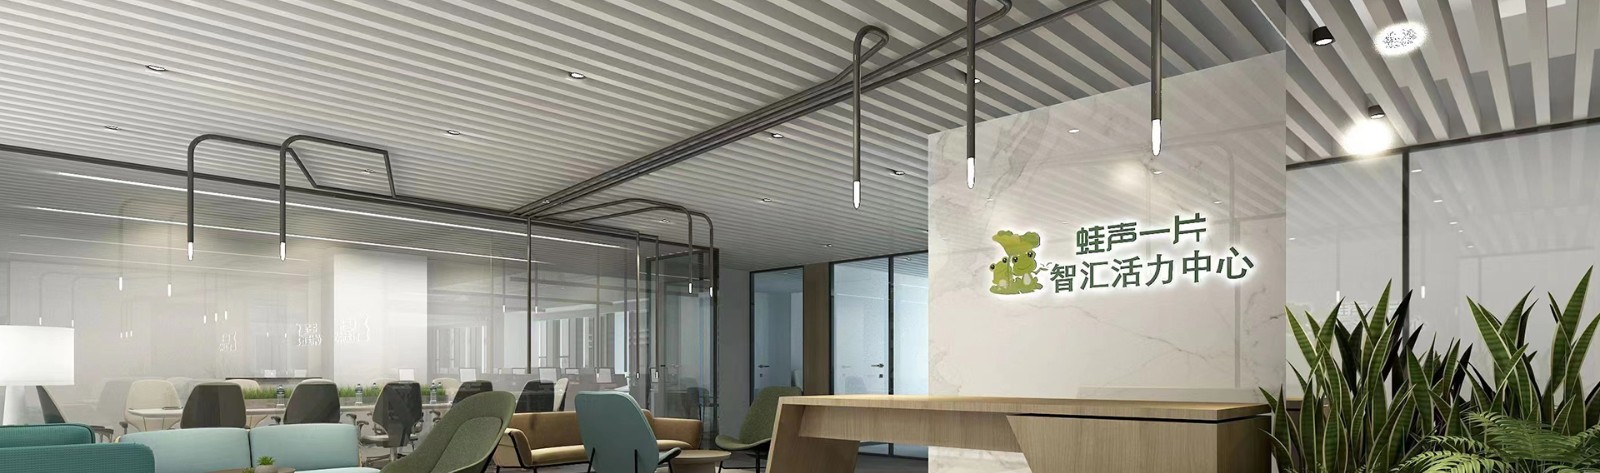 蛙声一片-青岛专业的联合办公空间、众创空间及科技孵化器7蛙声一片